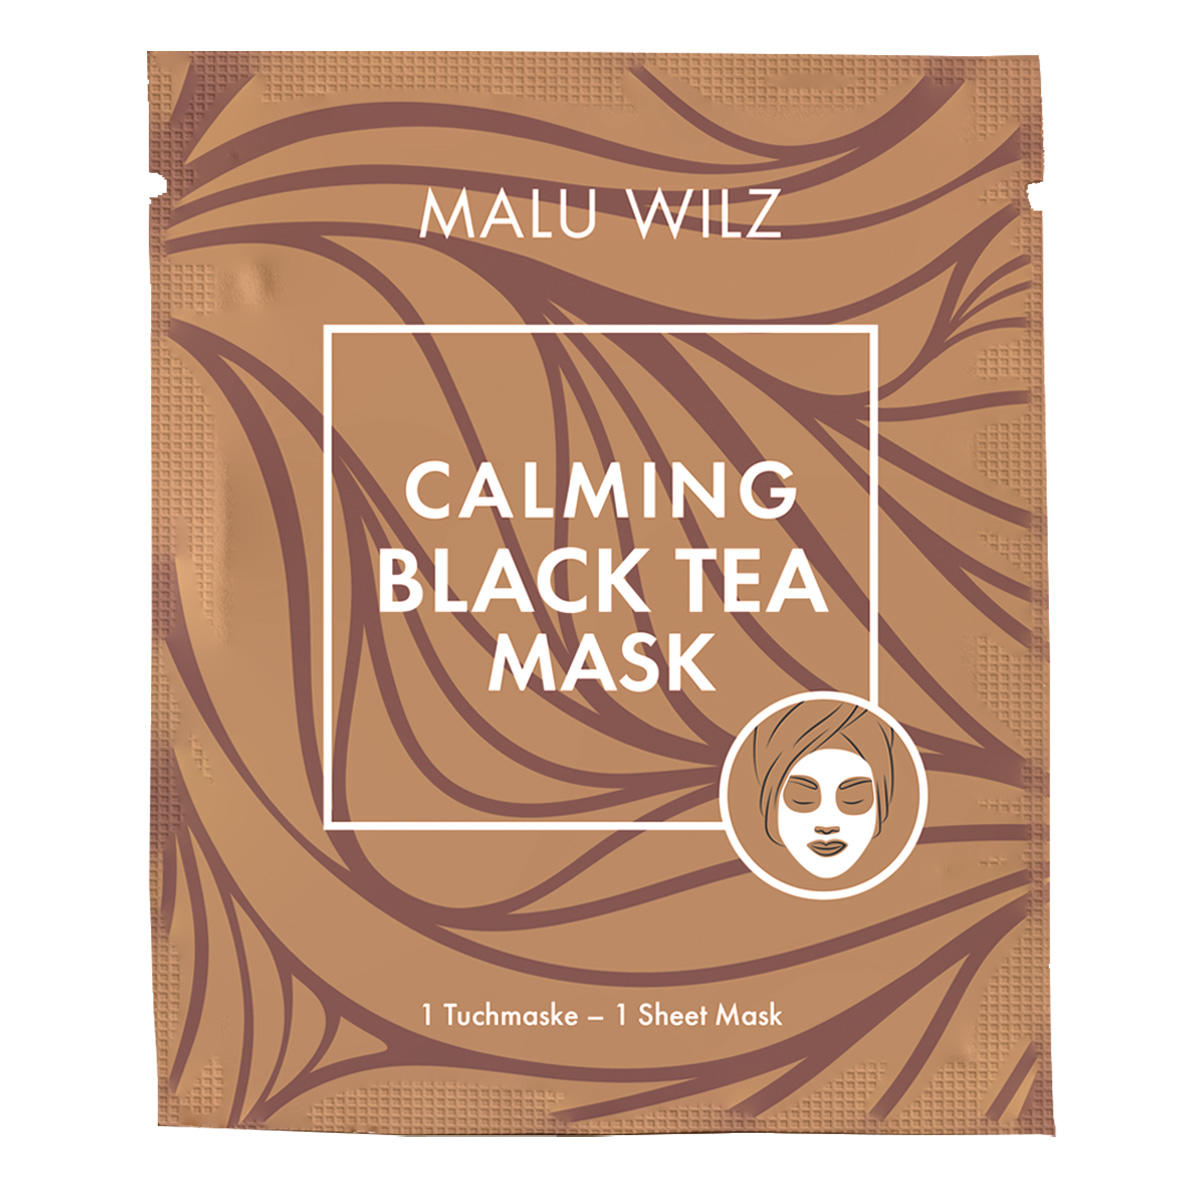 Malu Wilz Masque calmant au thé noir 1 Stück - 1